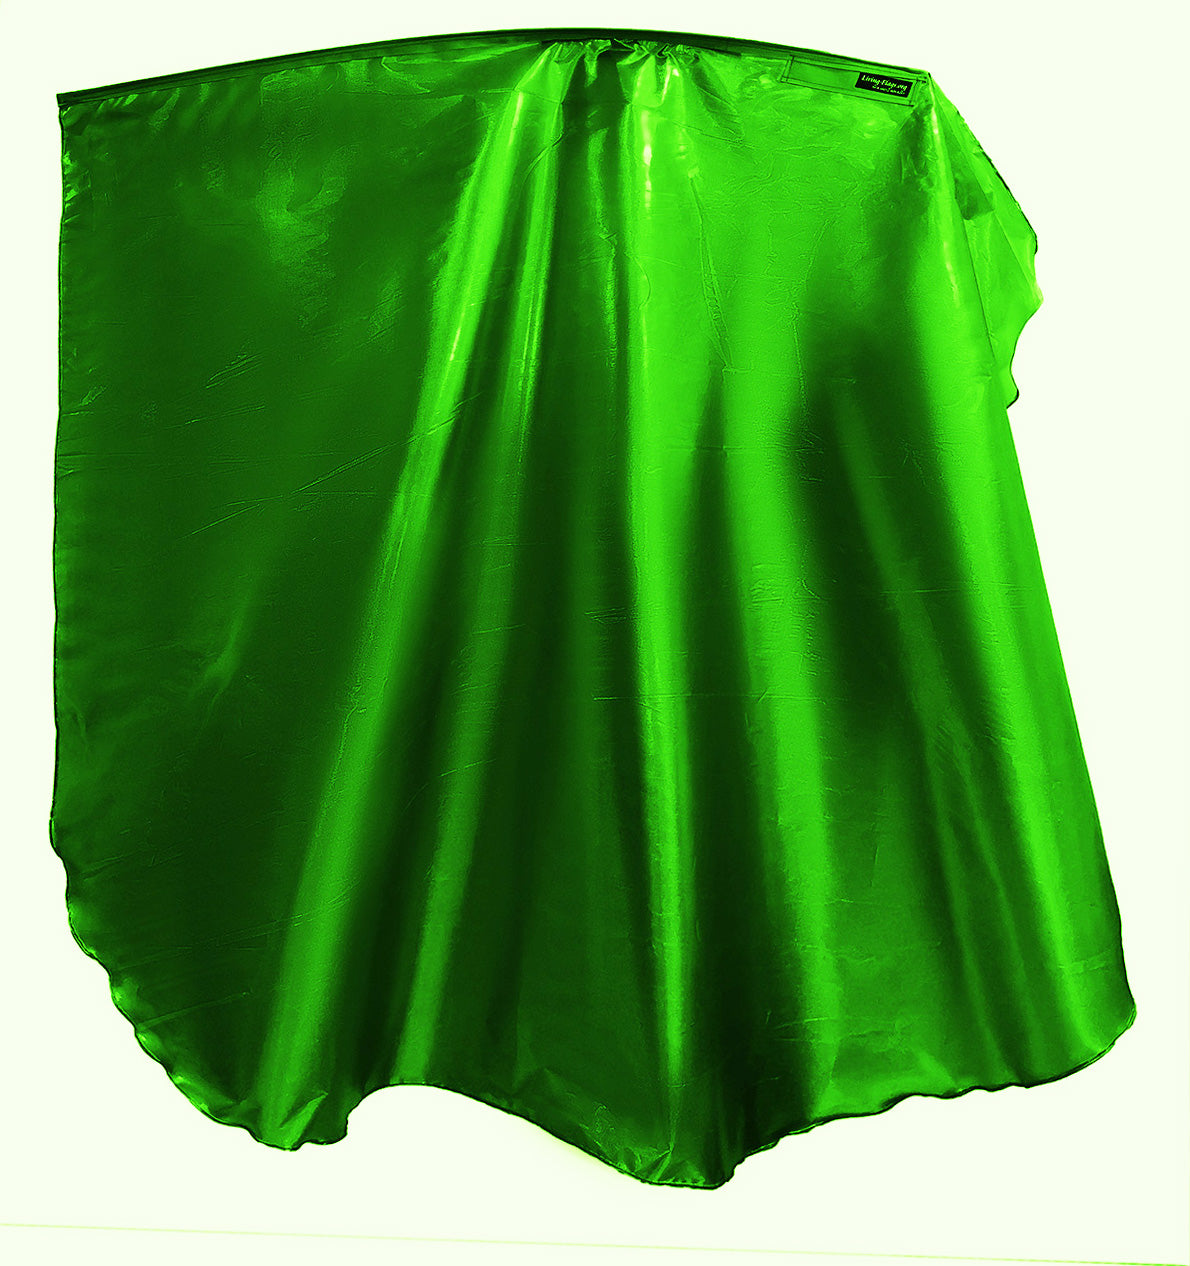 WXLL-Quill - Flüssigmetall Green Wing Flag - 40 " flexibler Stab